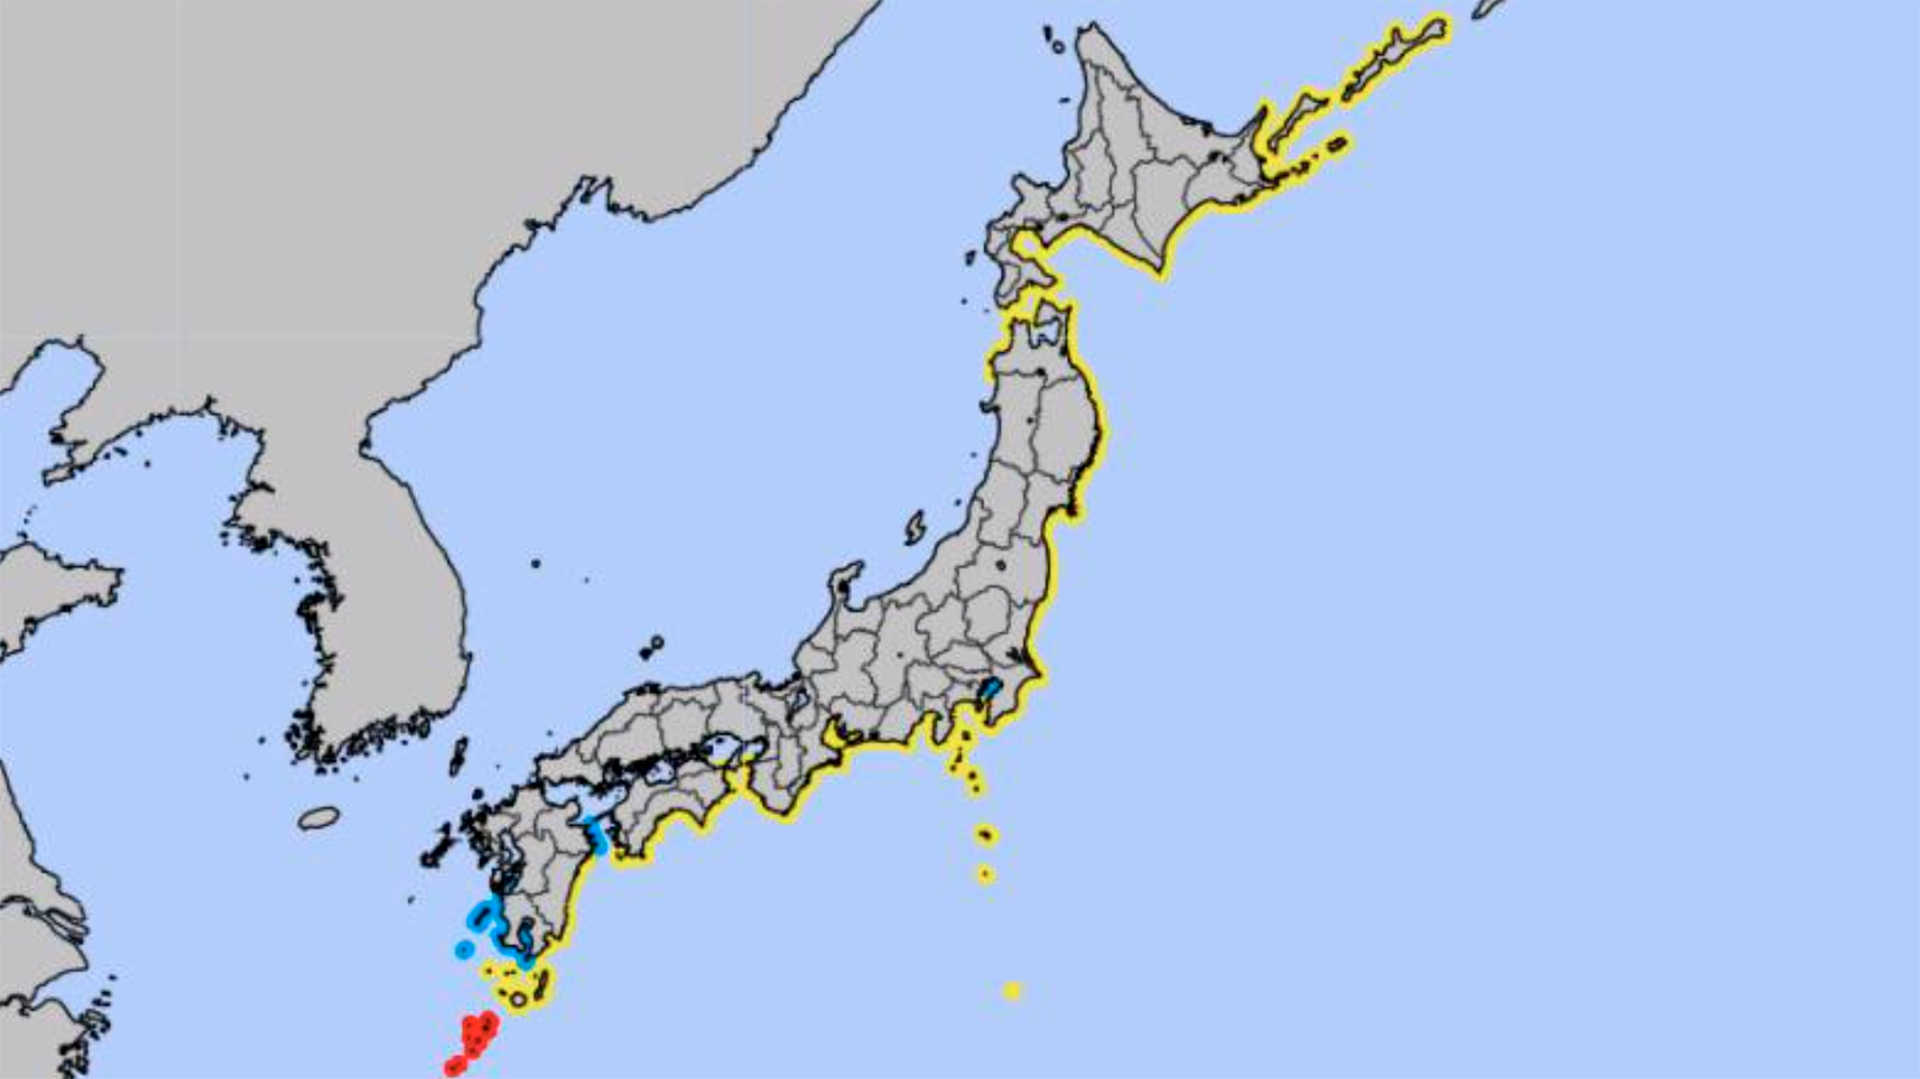 Imágenes del servicio meteorológico de Japón sobre la alerta de Tsnuami tras la erupción en Tonga (JAPAN METEOROLOGICAL AGENCY)